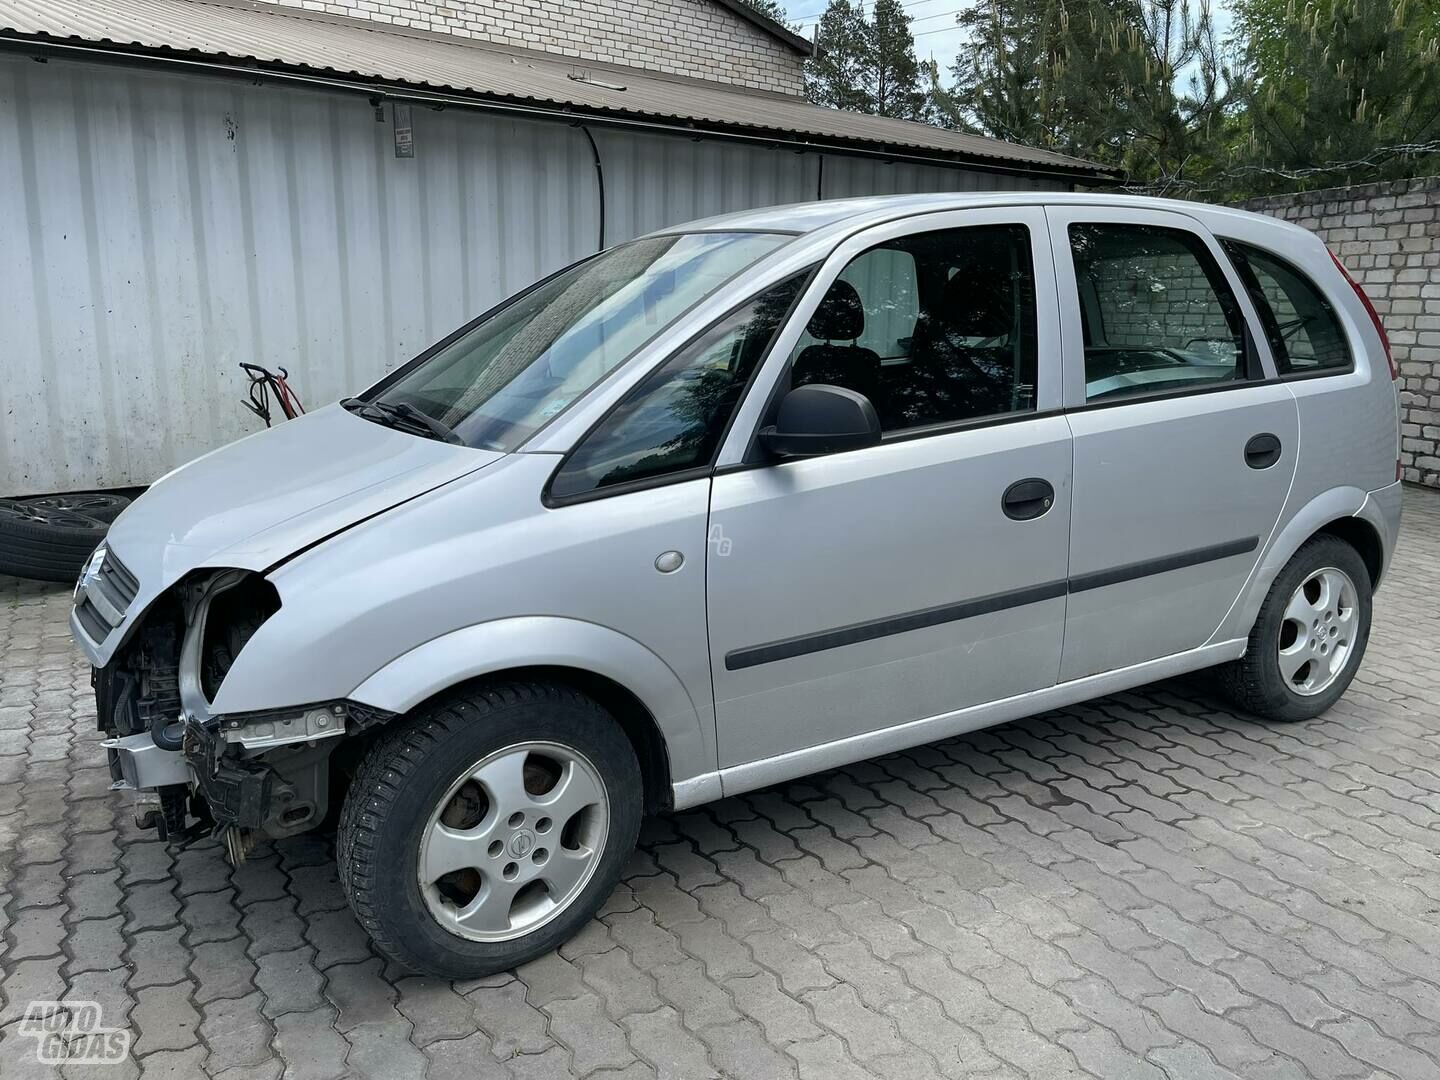 Z17DTH, Opel Meriva I 2004 г запчясти